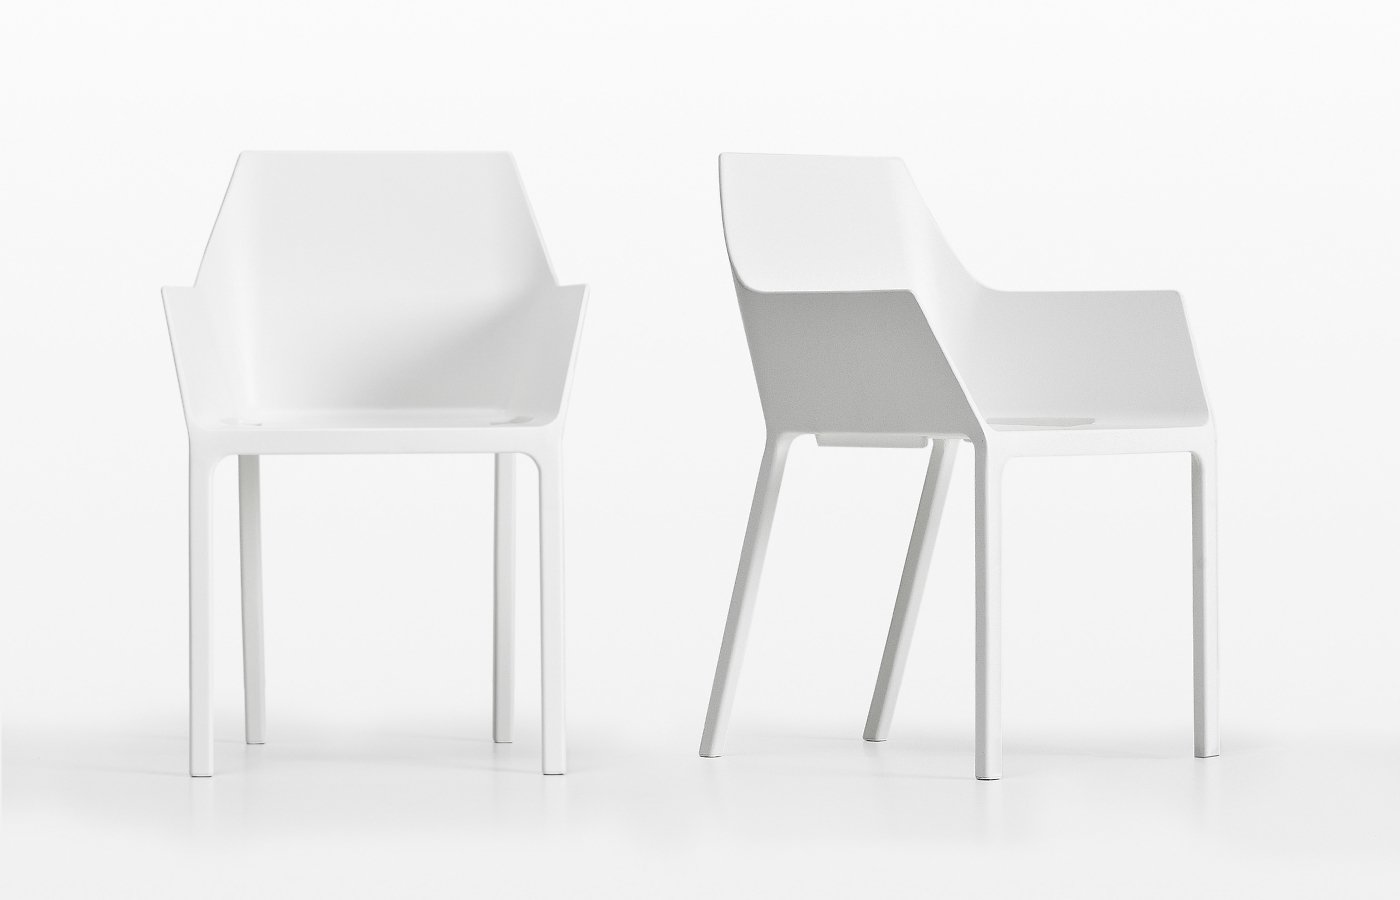 Mem Chair from Kristalia, designed by Christophe Pillet